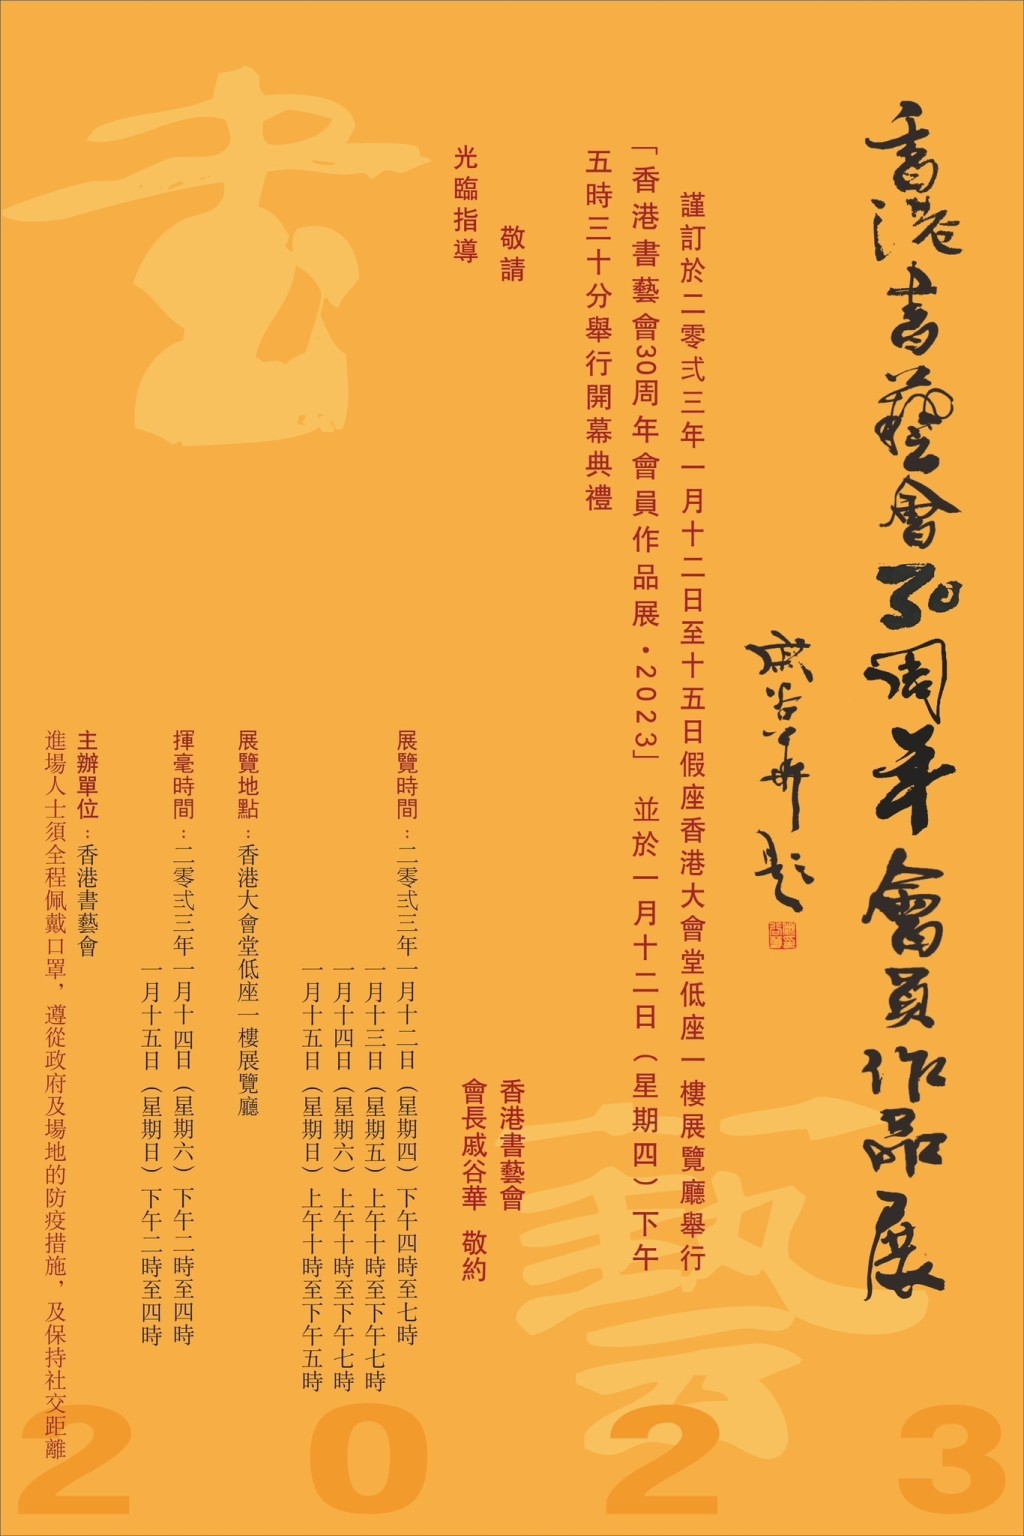 「香港書藝會30周年會員作品展」展出戚谷華及其學生超過130幅作品。